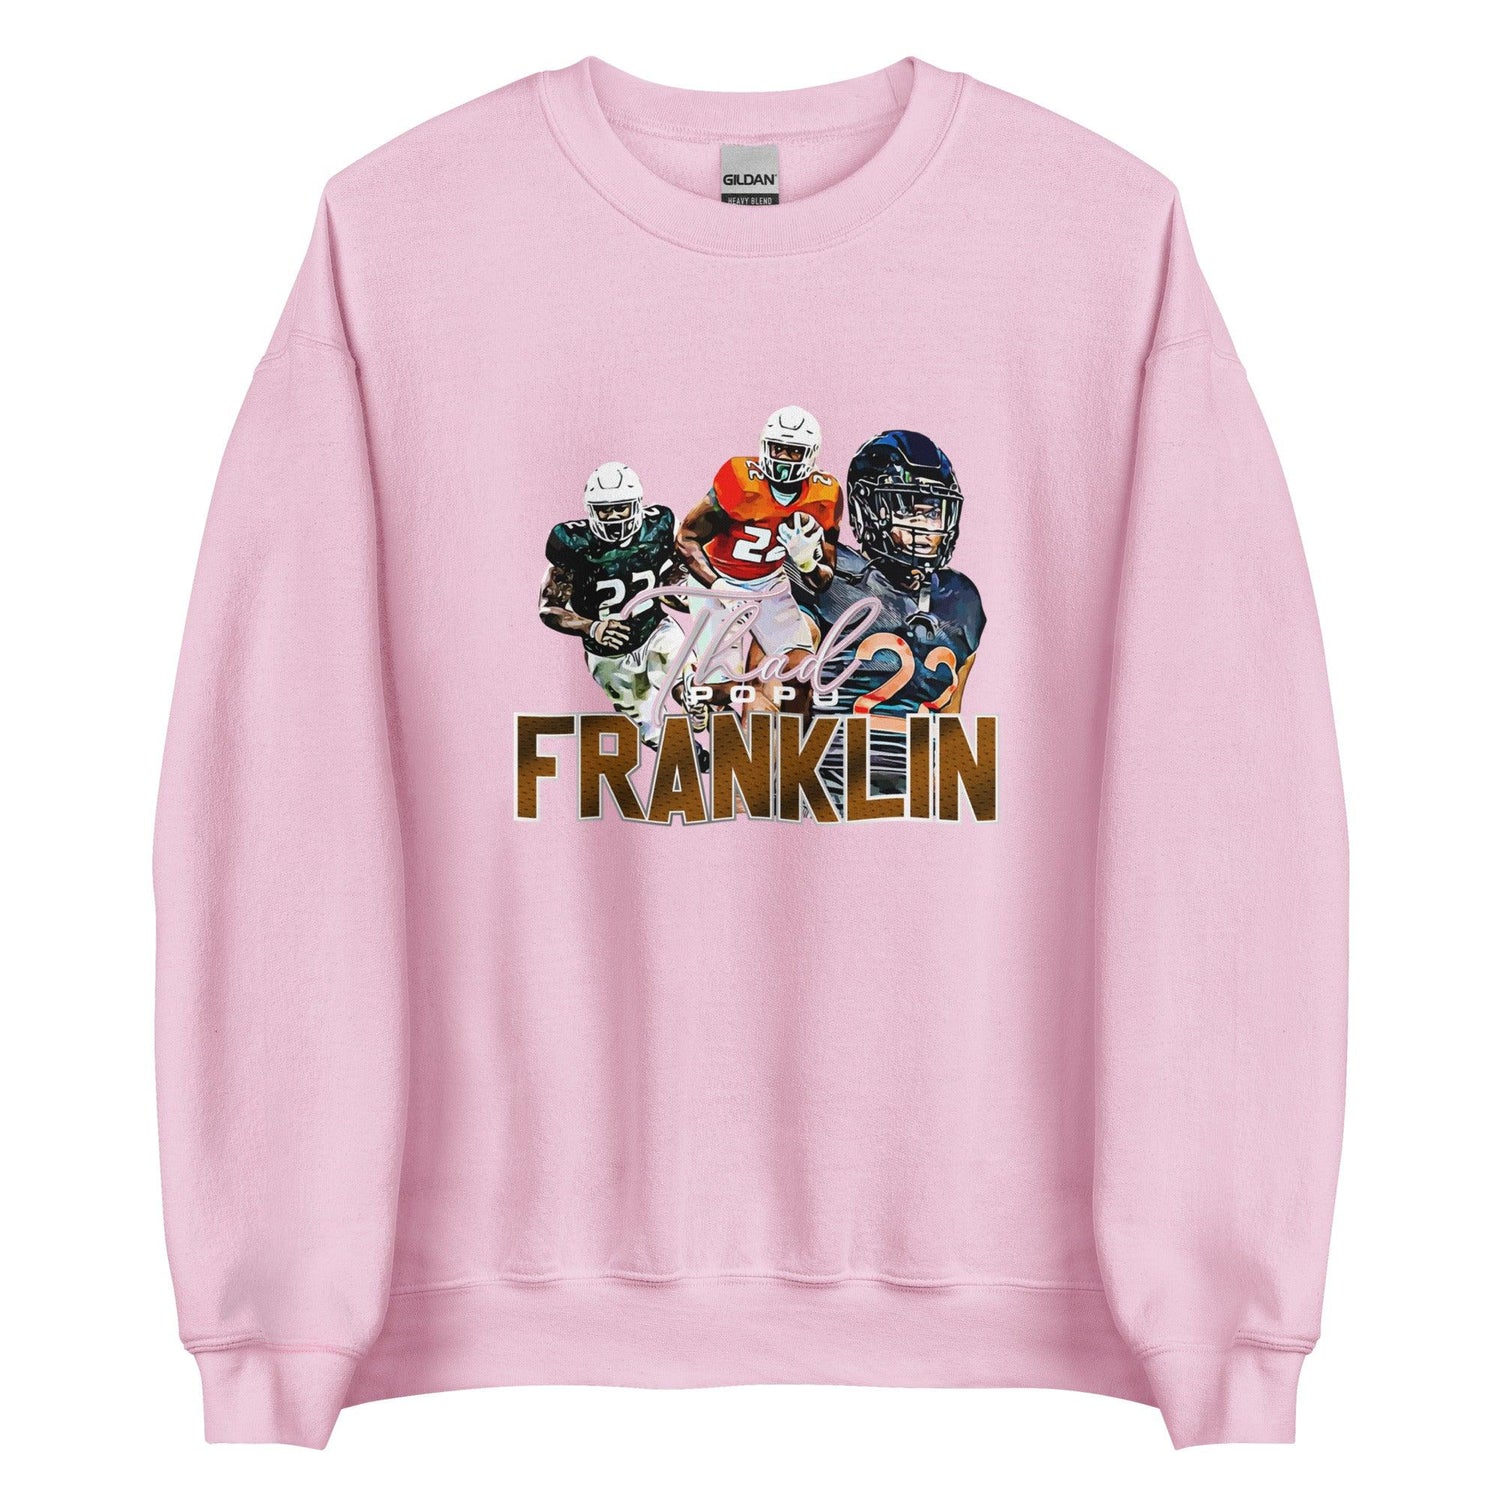 Thad Franklin "Limited Edition" Sweatshirt - Fan Arch